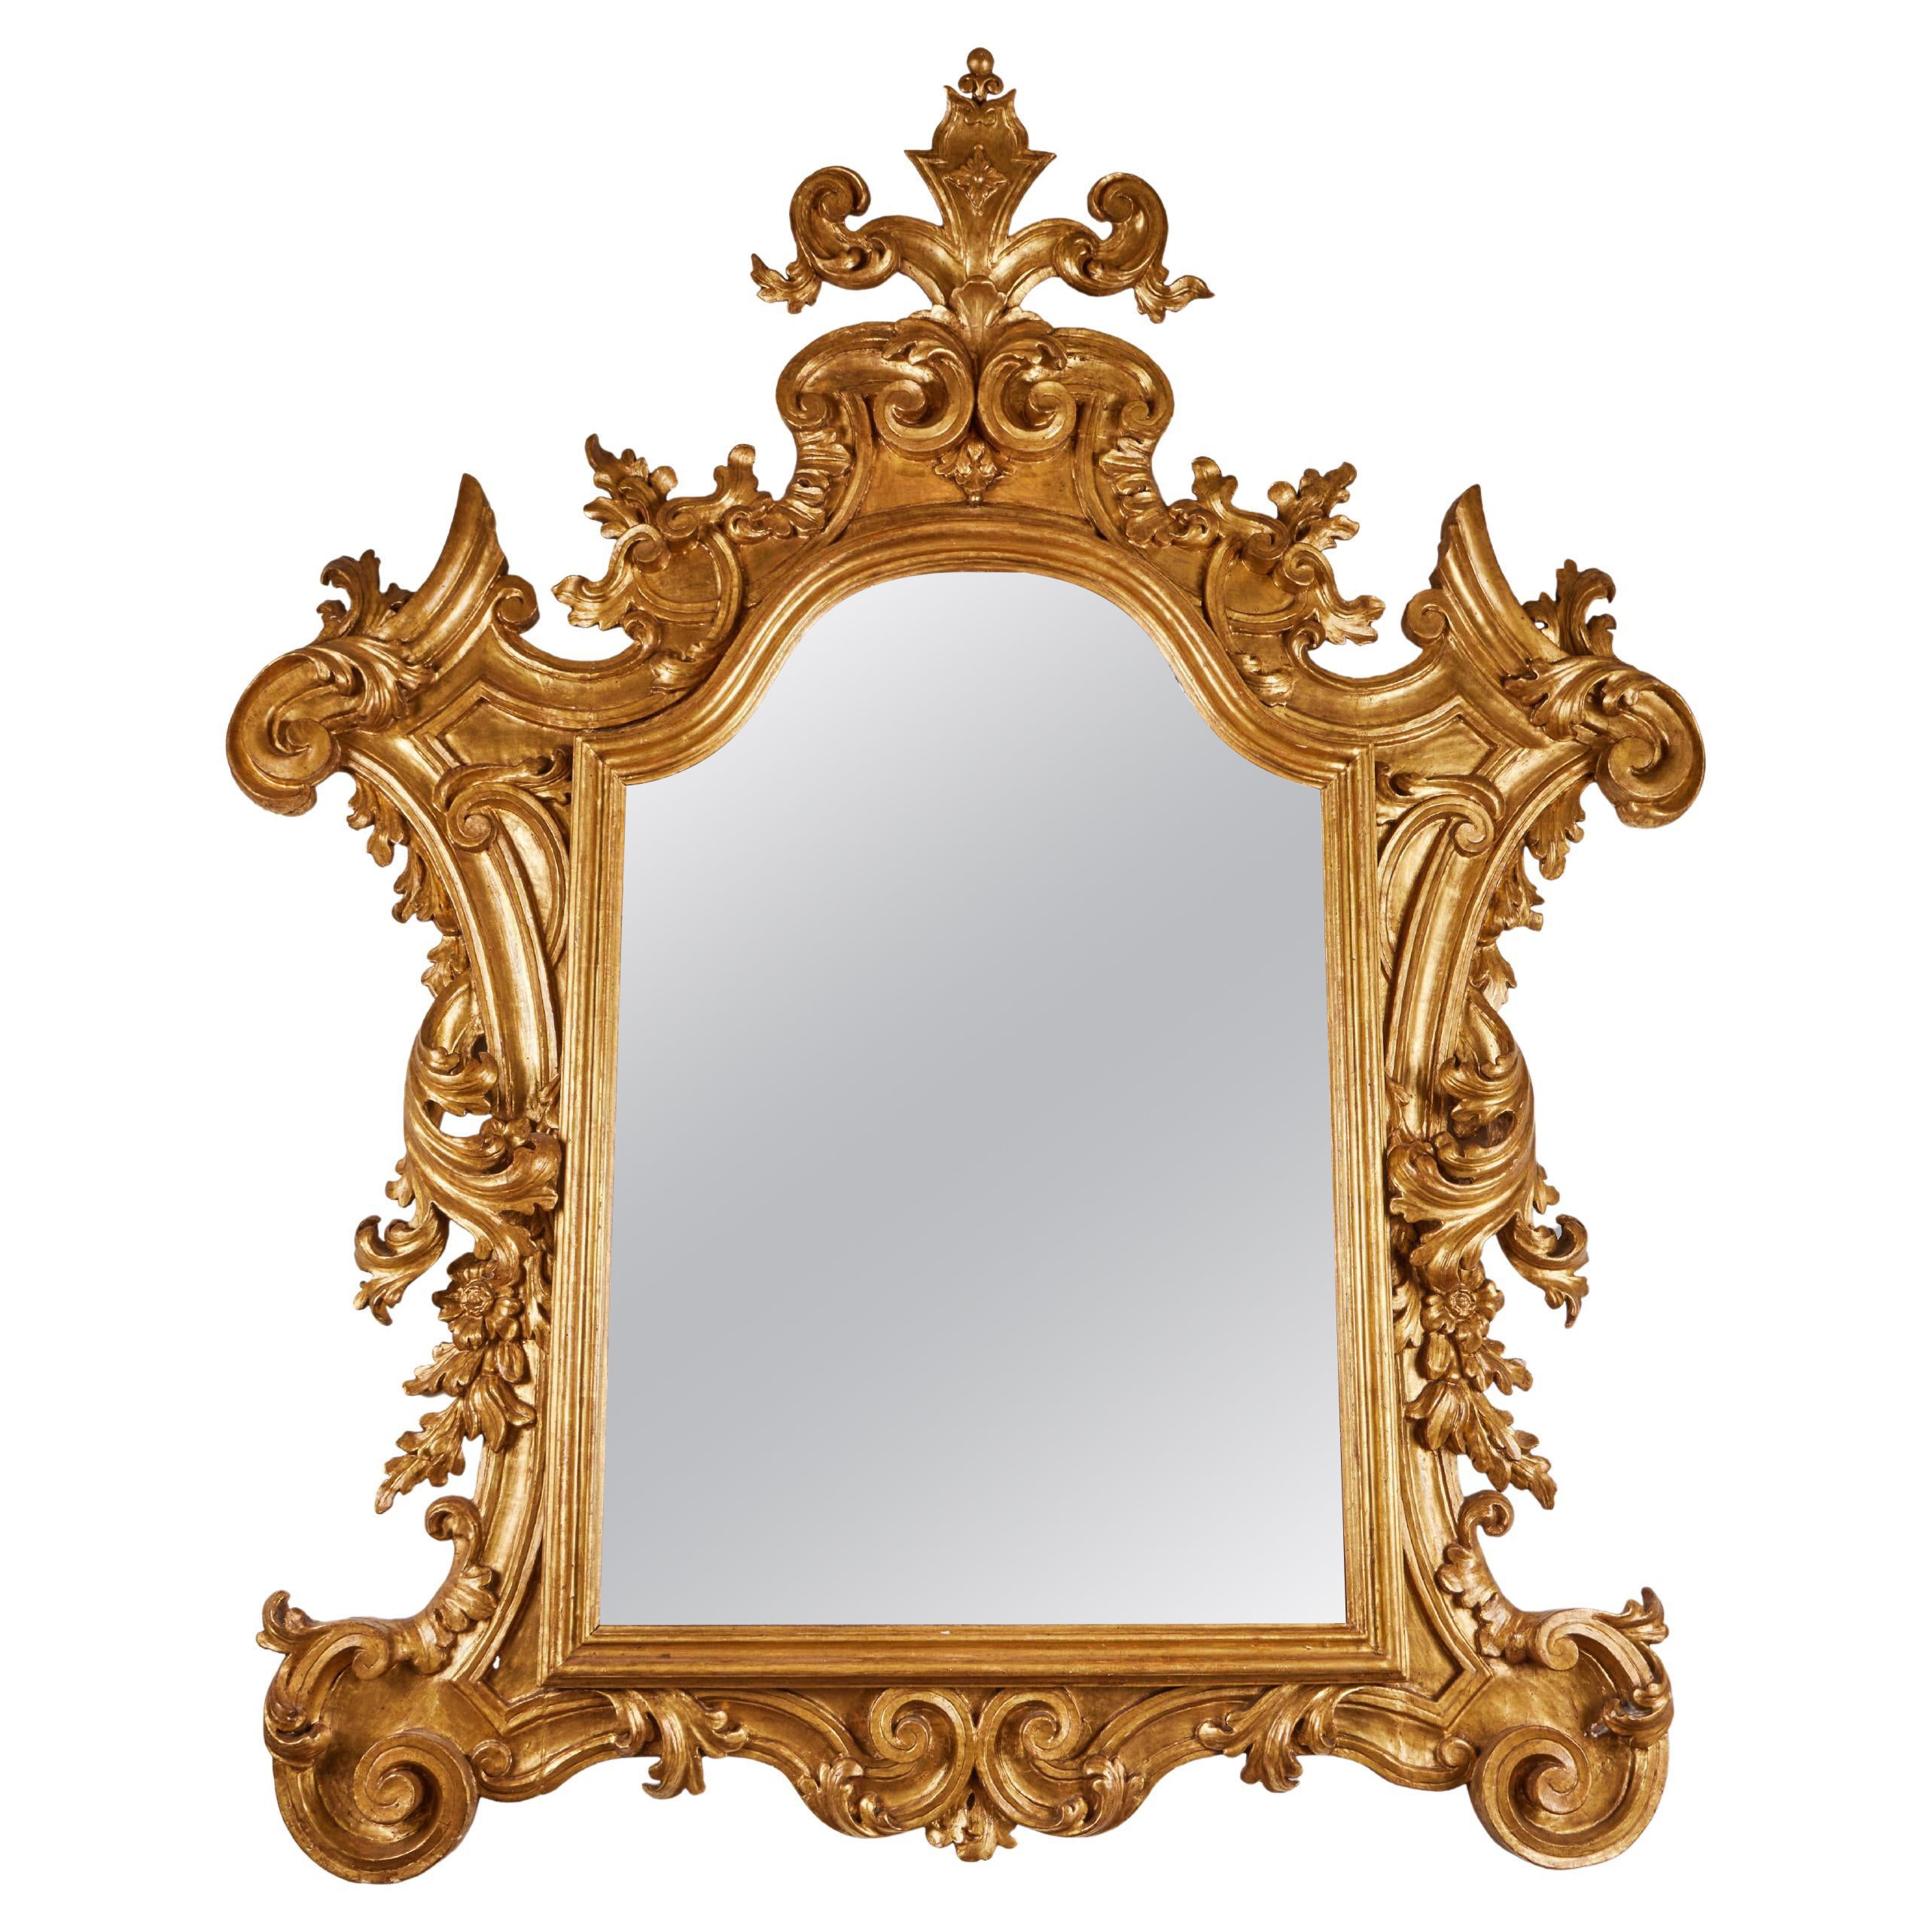 Milieu du XIXe siècle, Miroir vénitien doré